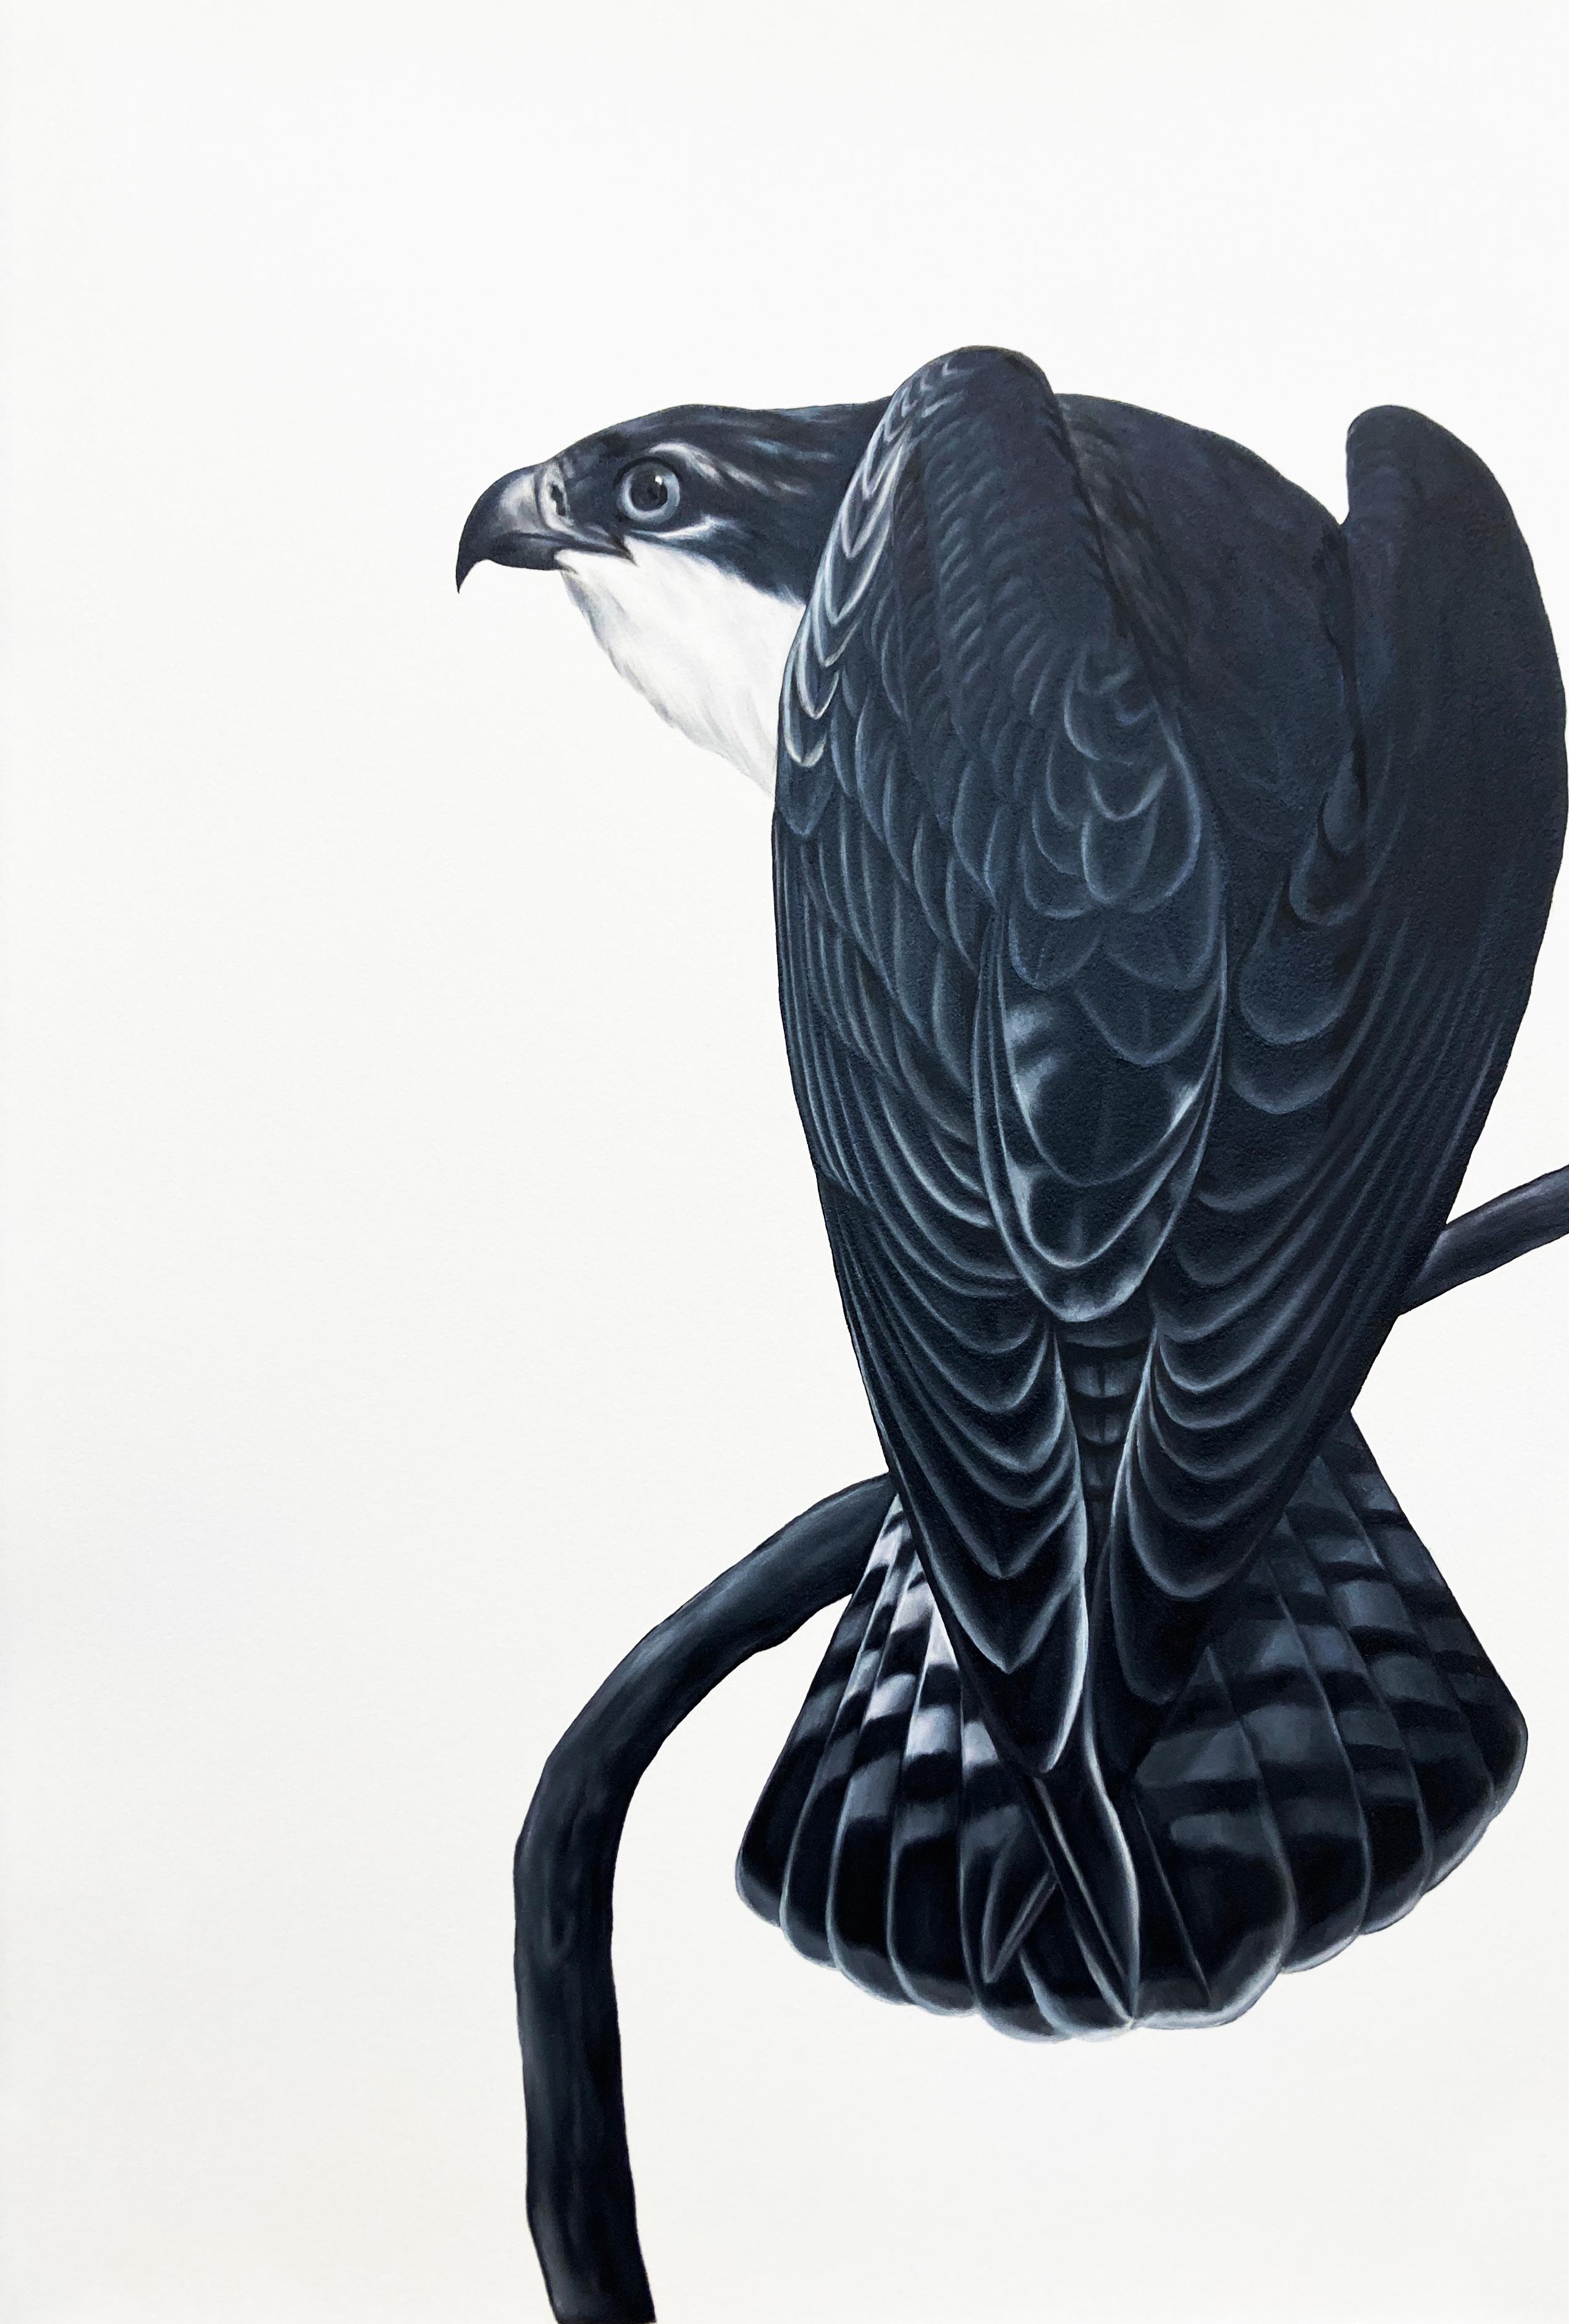 Shelley Reed Animal Painting - Osprey I (after Audubon)